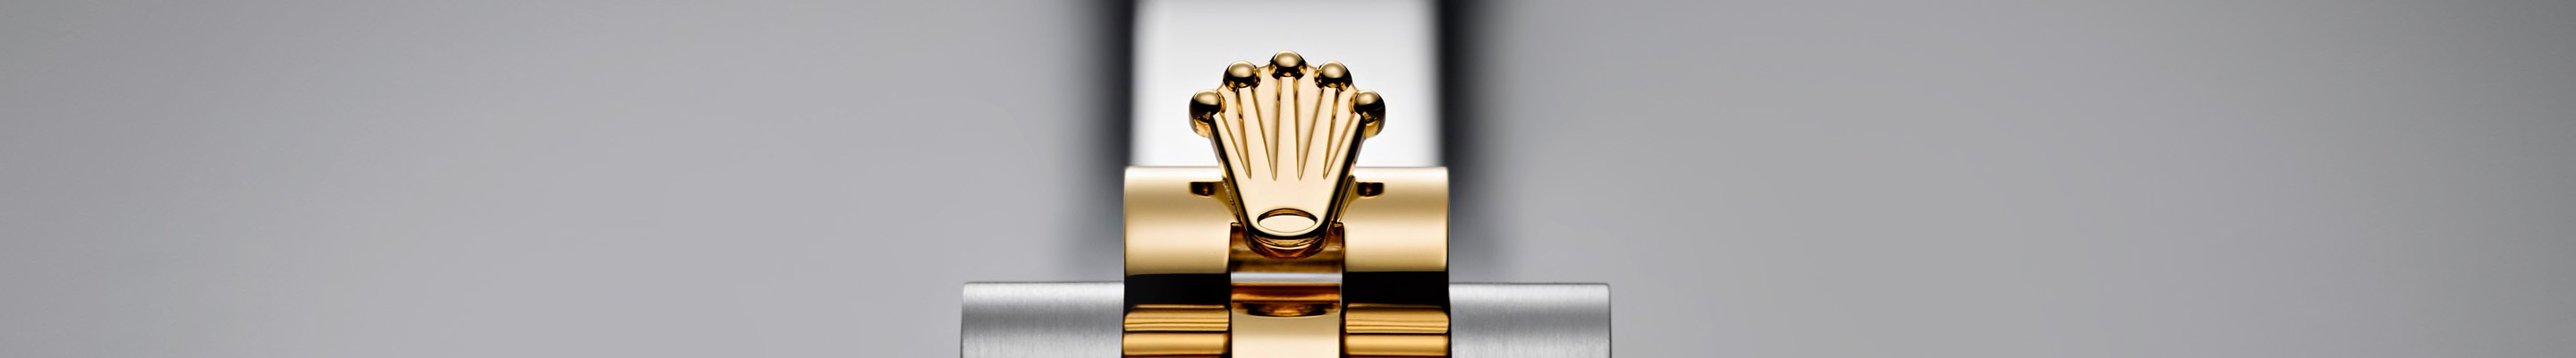 Die Rolex Krone als Symbol der Uhrenmarke